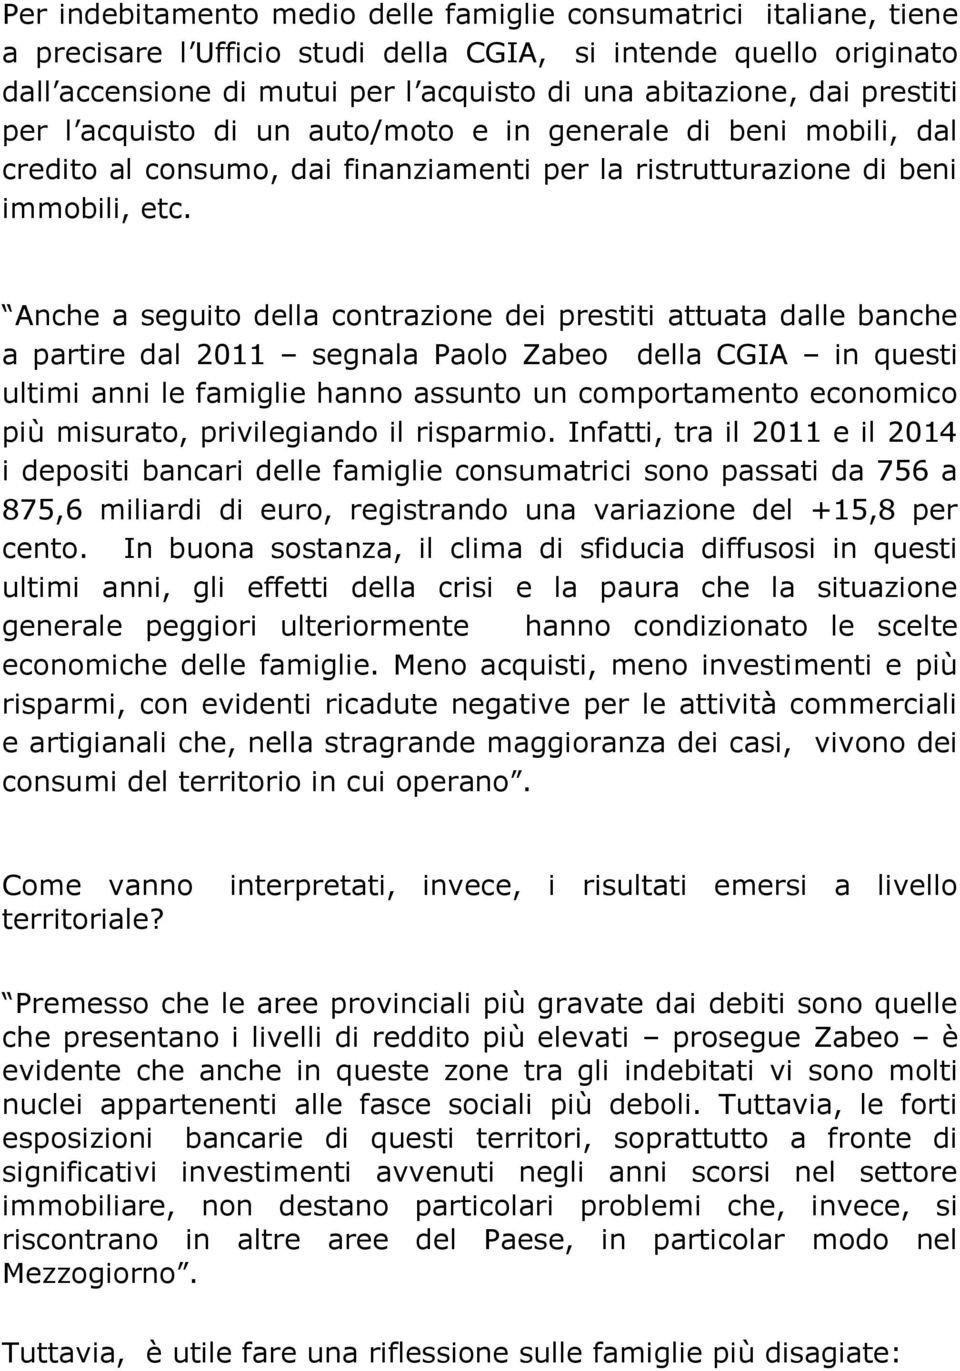 Anche a seguito della contrazione dei prestiti attuata dalle banche a partire dal 2011 segnala Paolo Zabeo della CGIA in questi ultimi anni le famiglie hanno assunto un comportamento economico più